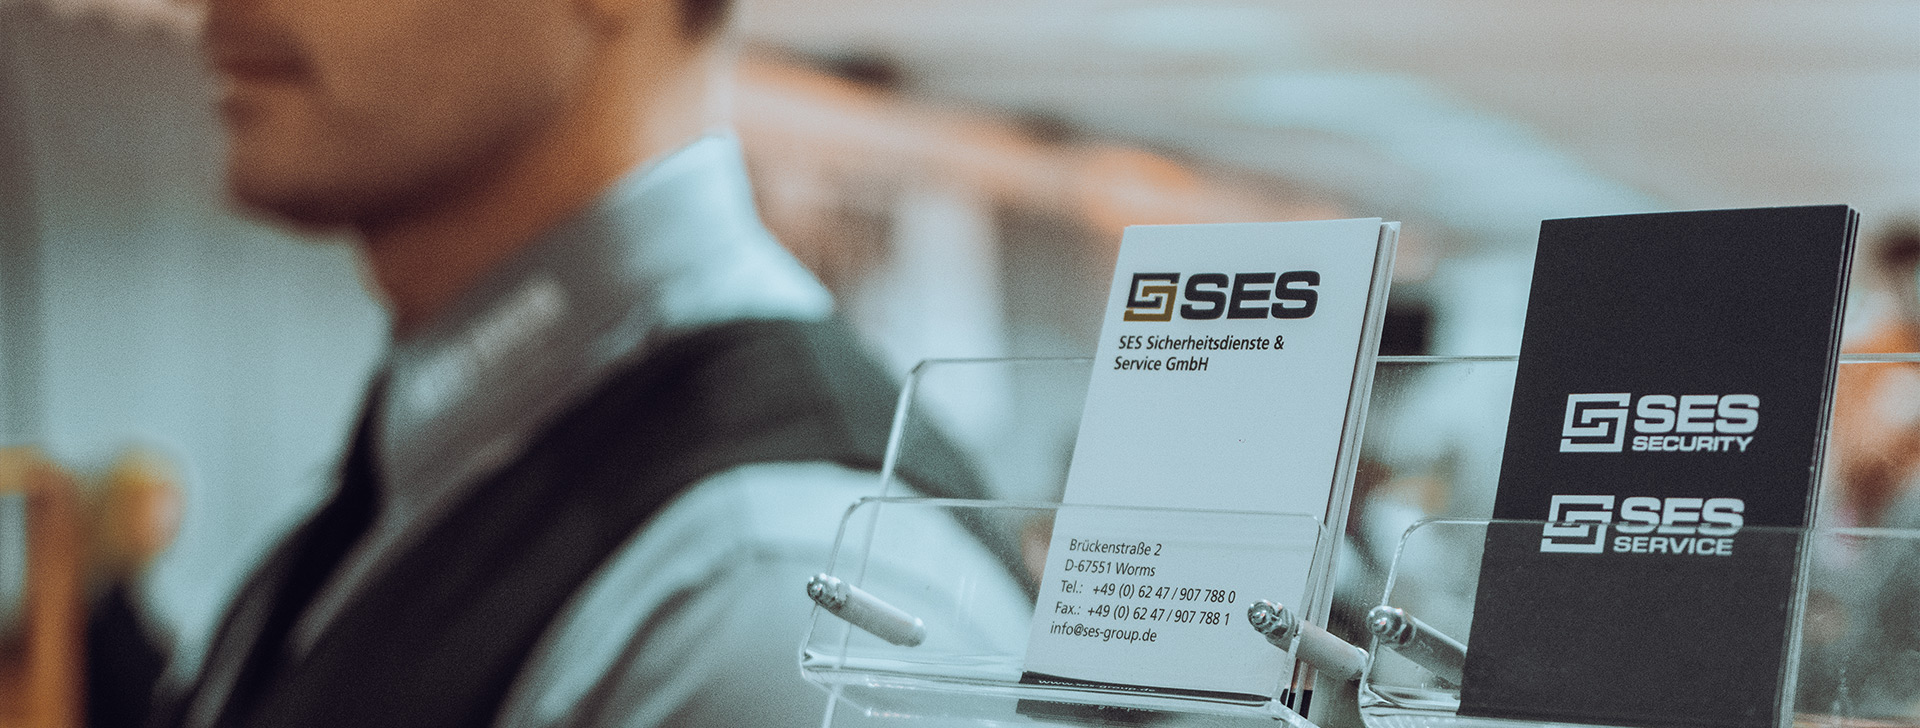 Visitenkarten von SES Sicherheitsdienste & Service GmbH auf einem Tisch mit einem unscharfen Hintergrund